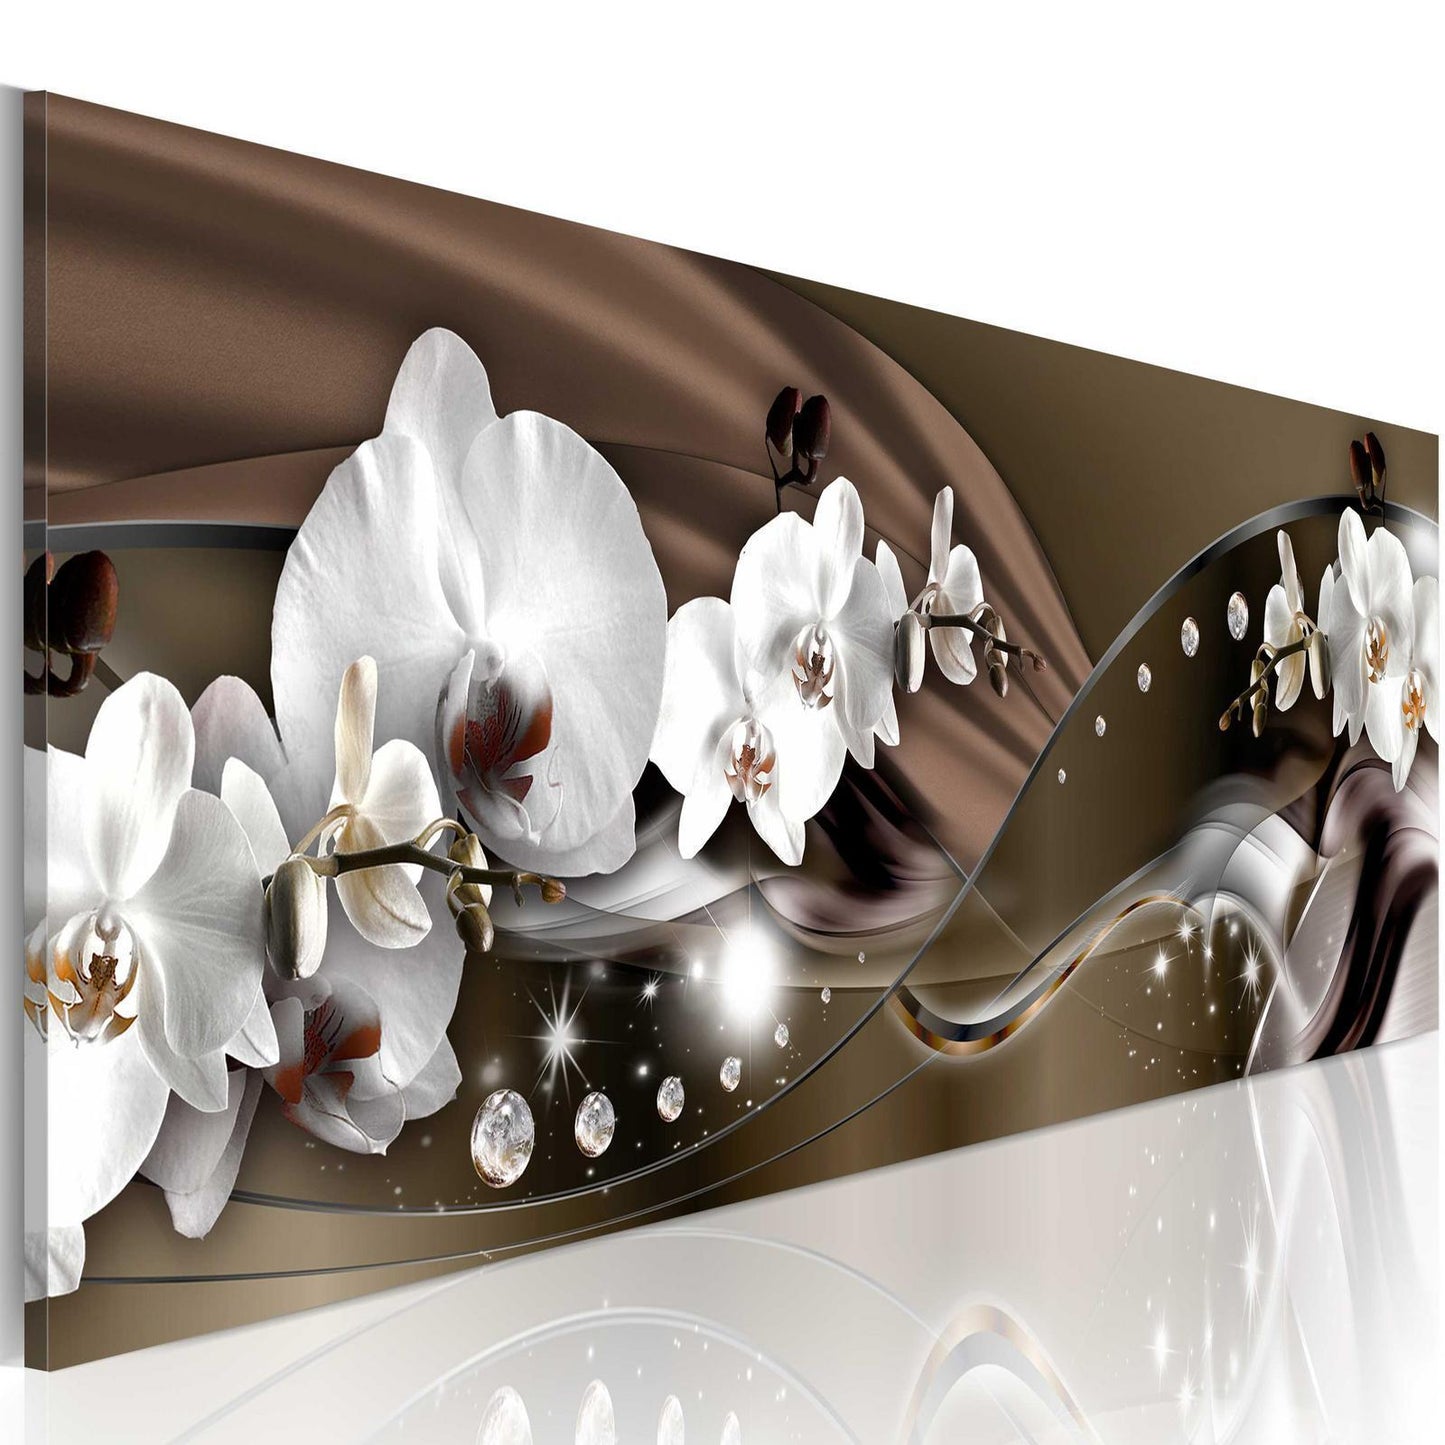 Schilderij - Chocolate Dance of Orchid